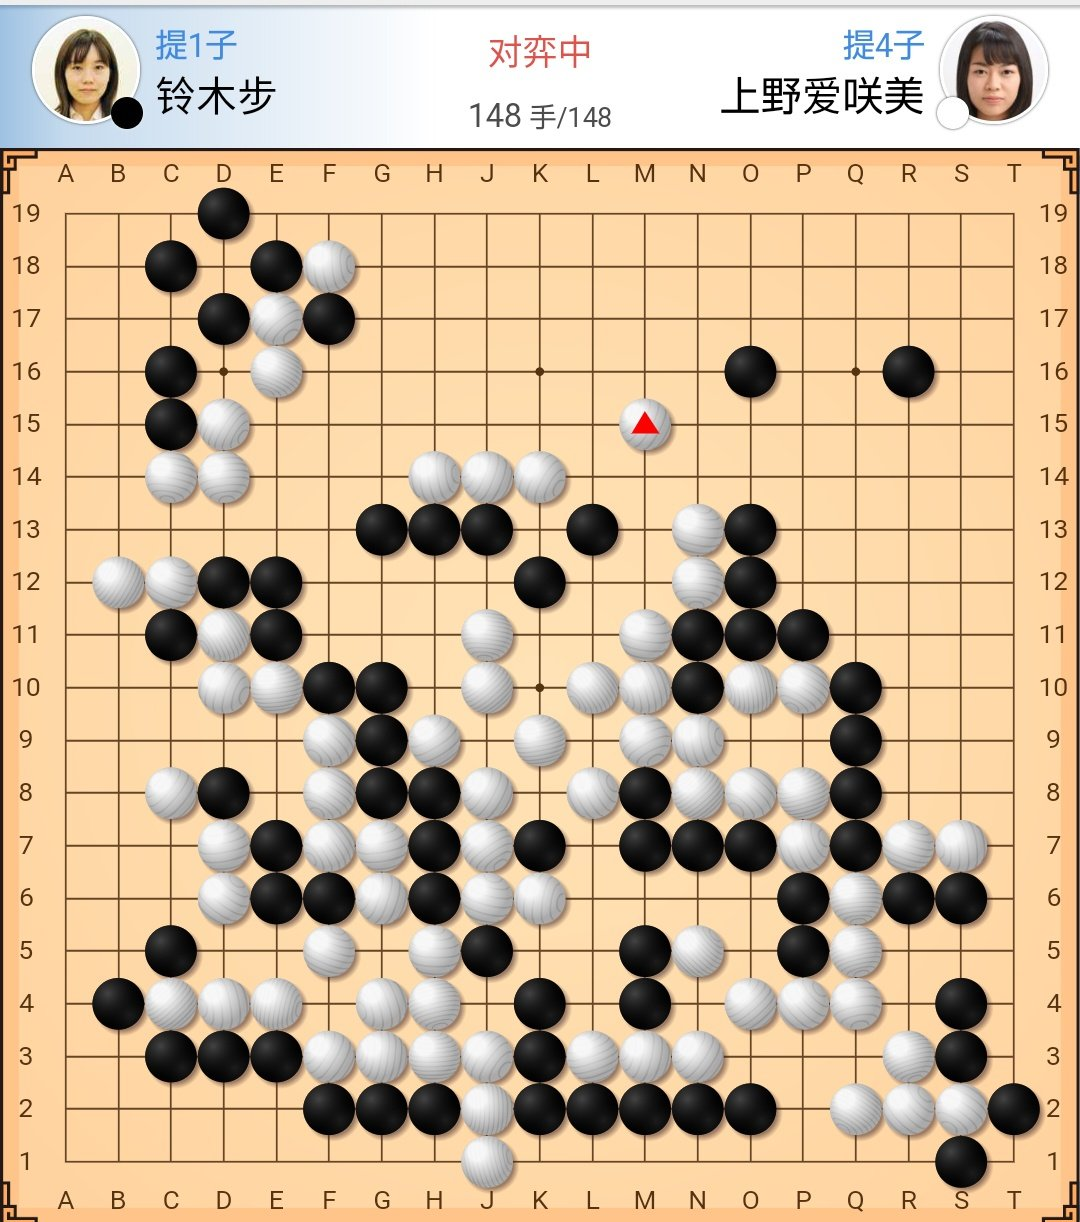 上野愛咲美奪回女流棋聖頭銜與藤澤里菜壟斷日本五大女子棋戰 資訊咖